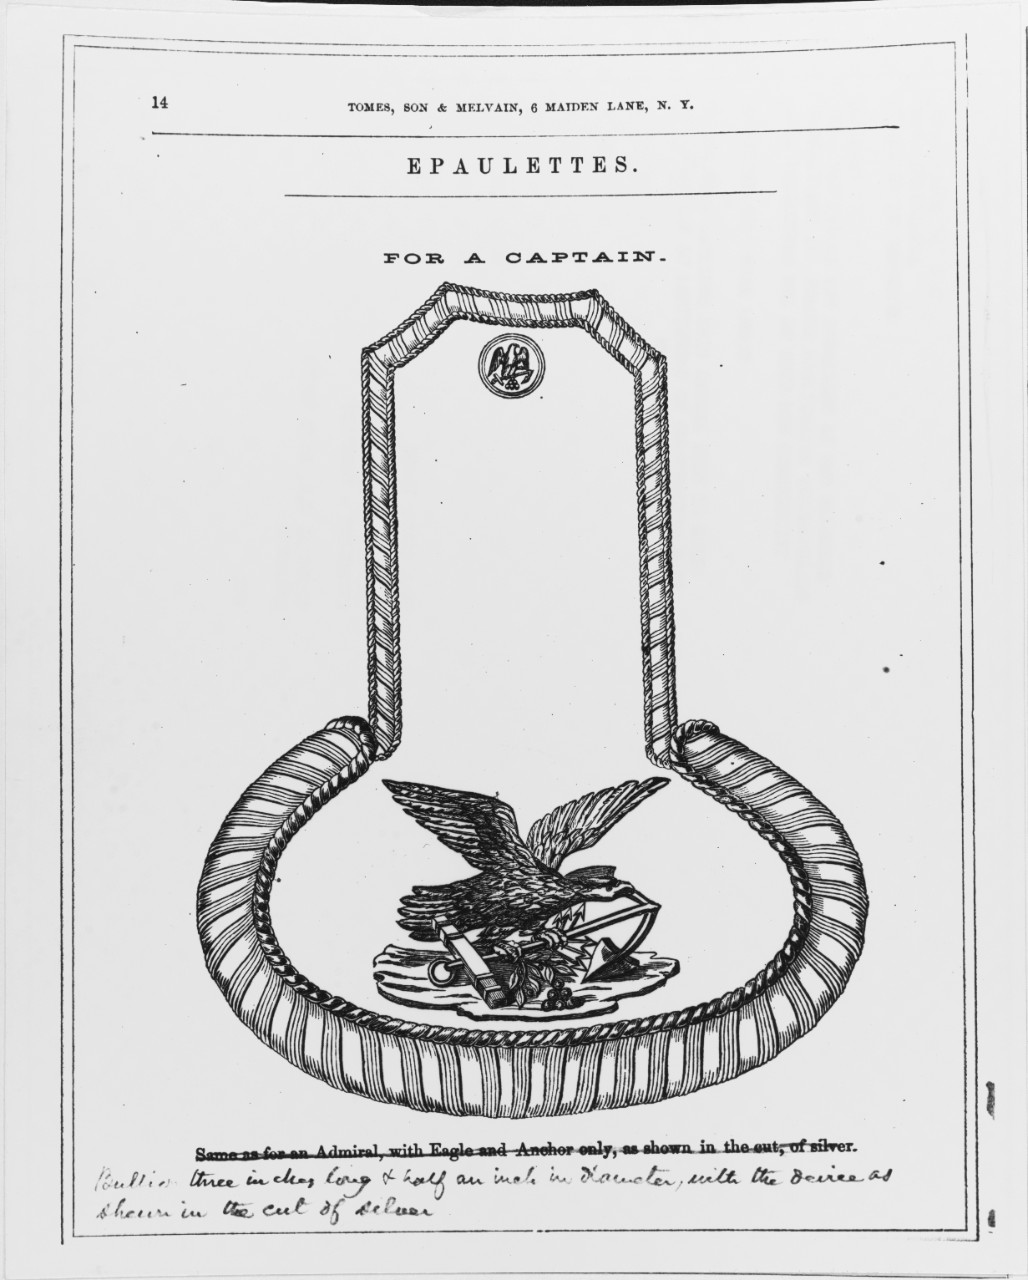 Uniform Regulations, 1862. Epaulets for a Captain